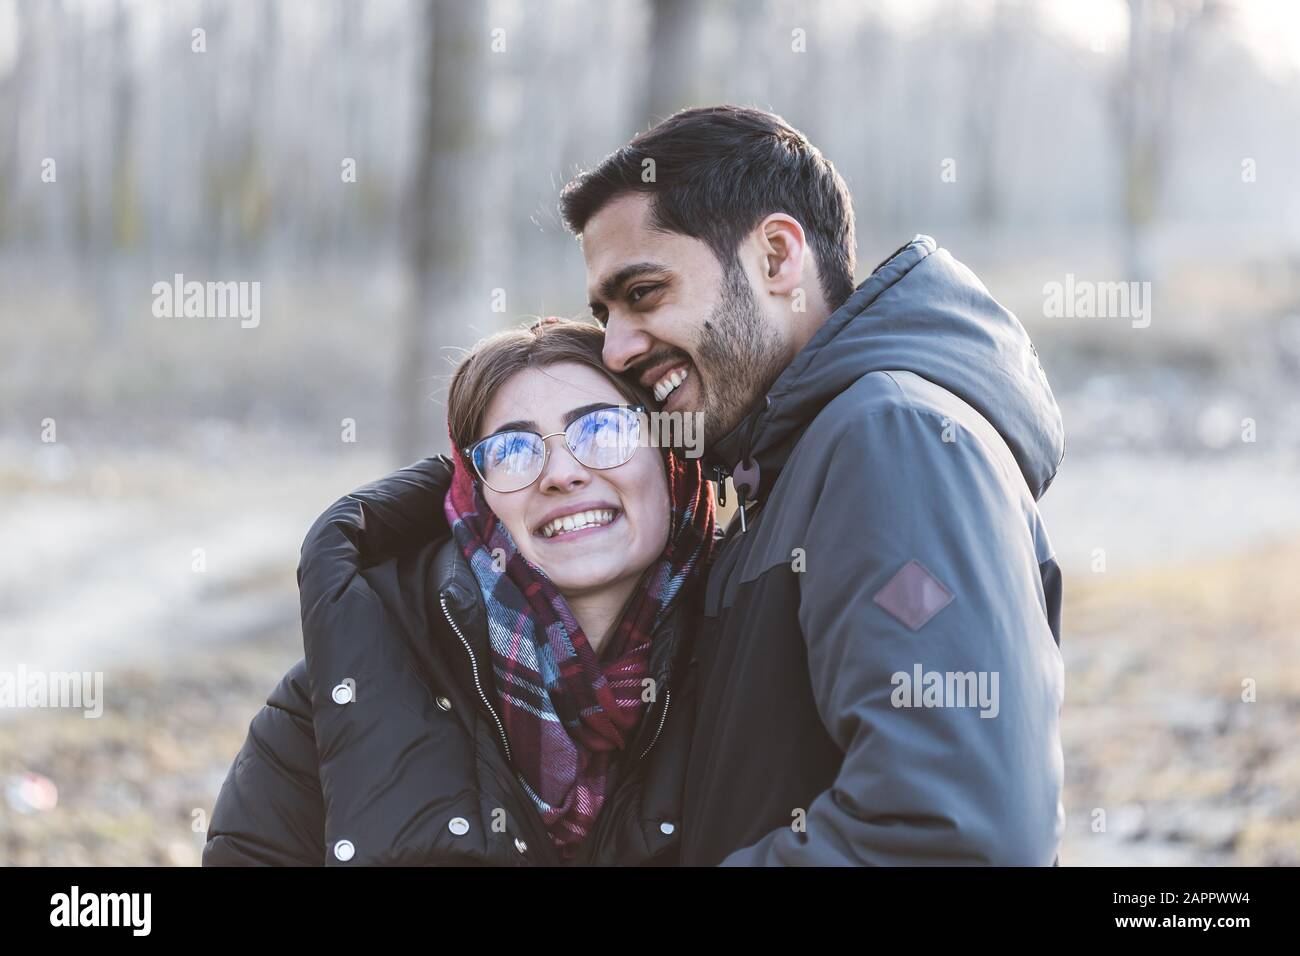 Fröhliches junges fröhliches Paar, das in der Herbstsaison lustige Momente hat und zusammen lacht. Stockfoto